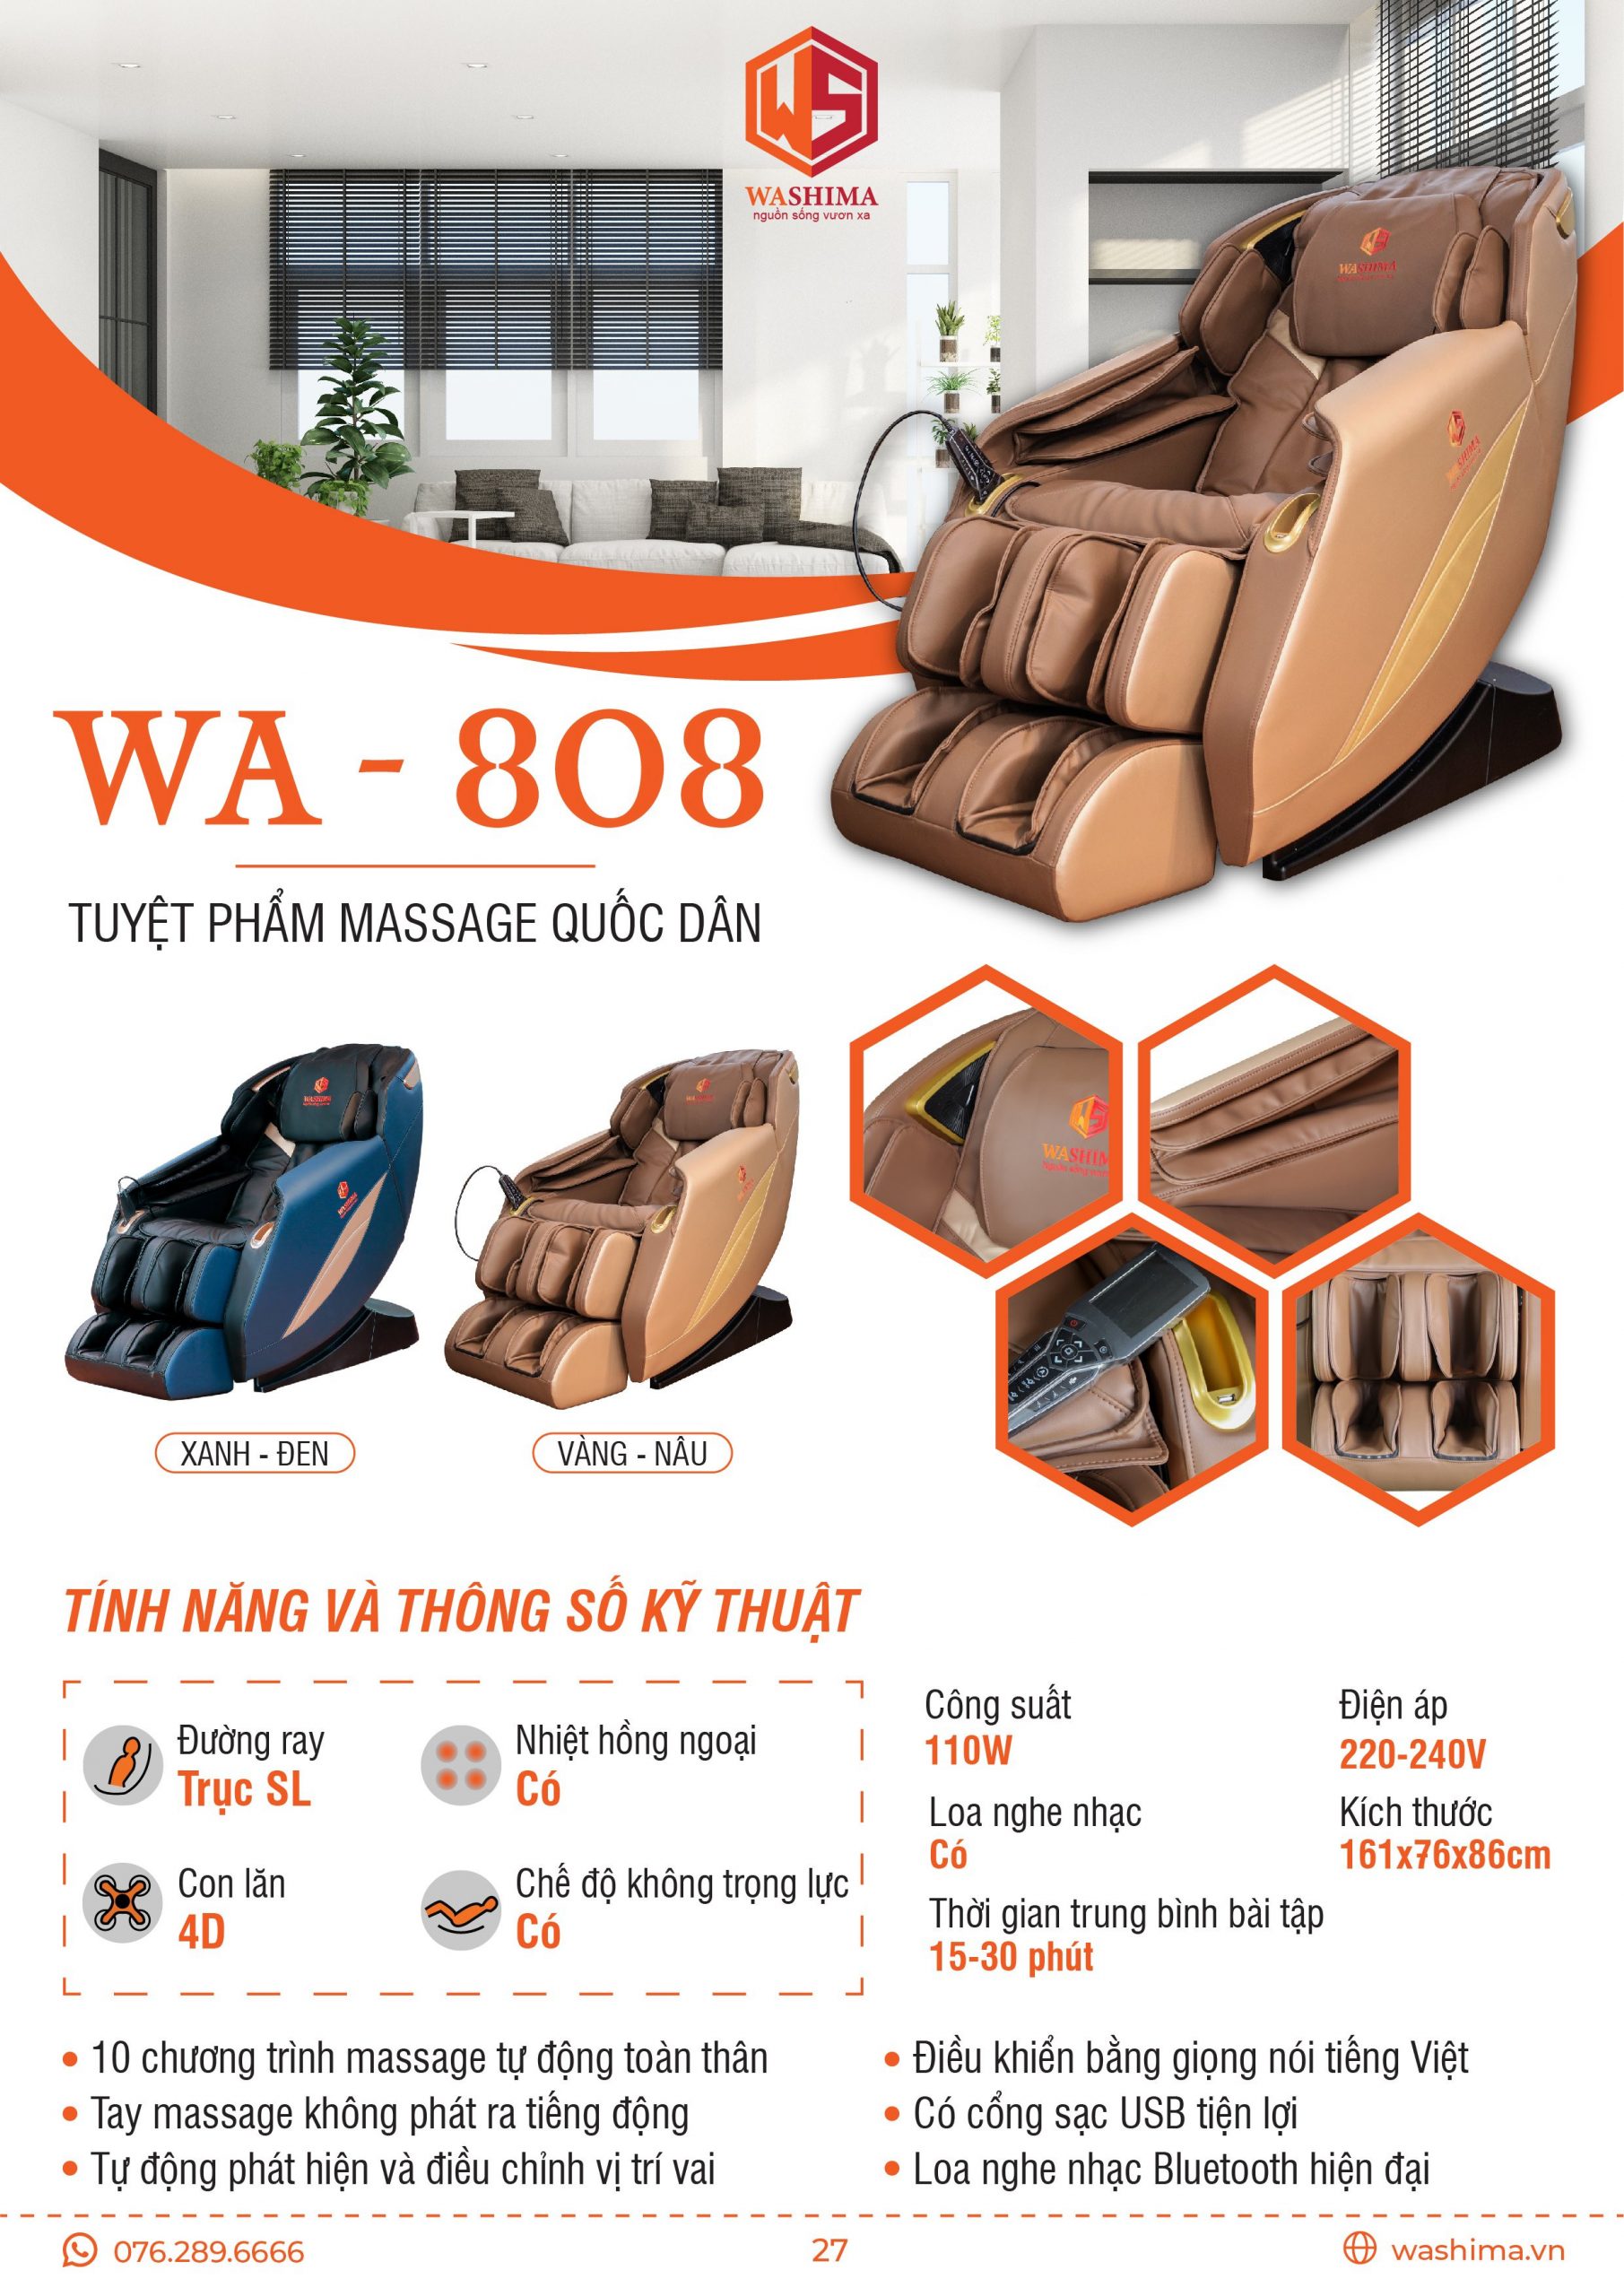 Thông số sản phẩm WA-808 tuyệt phẩm massage quốc dân